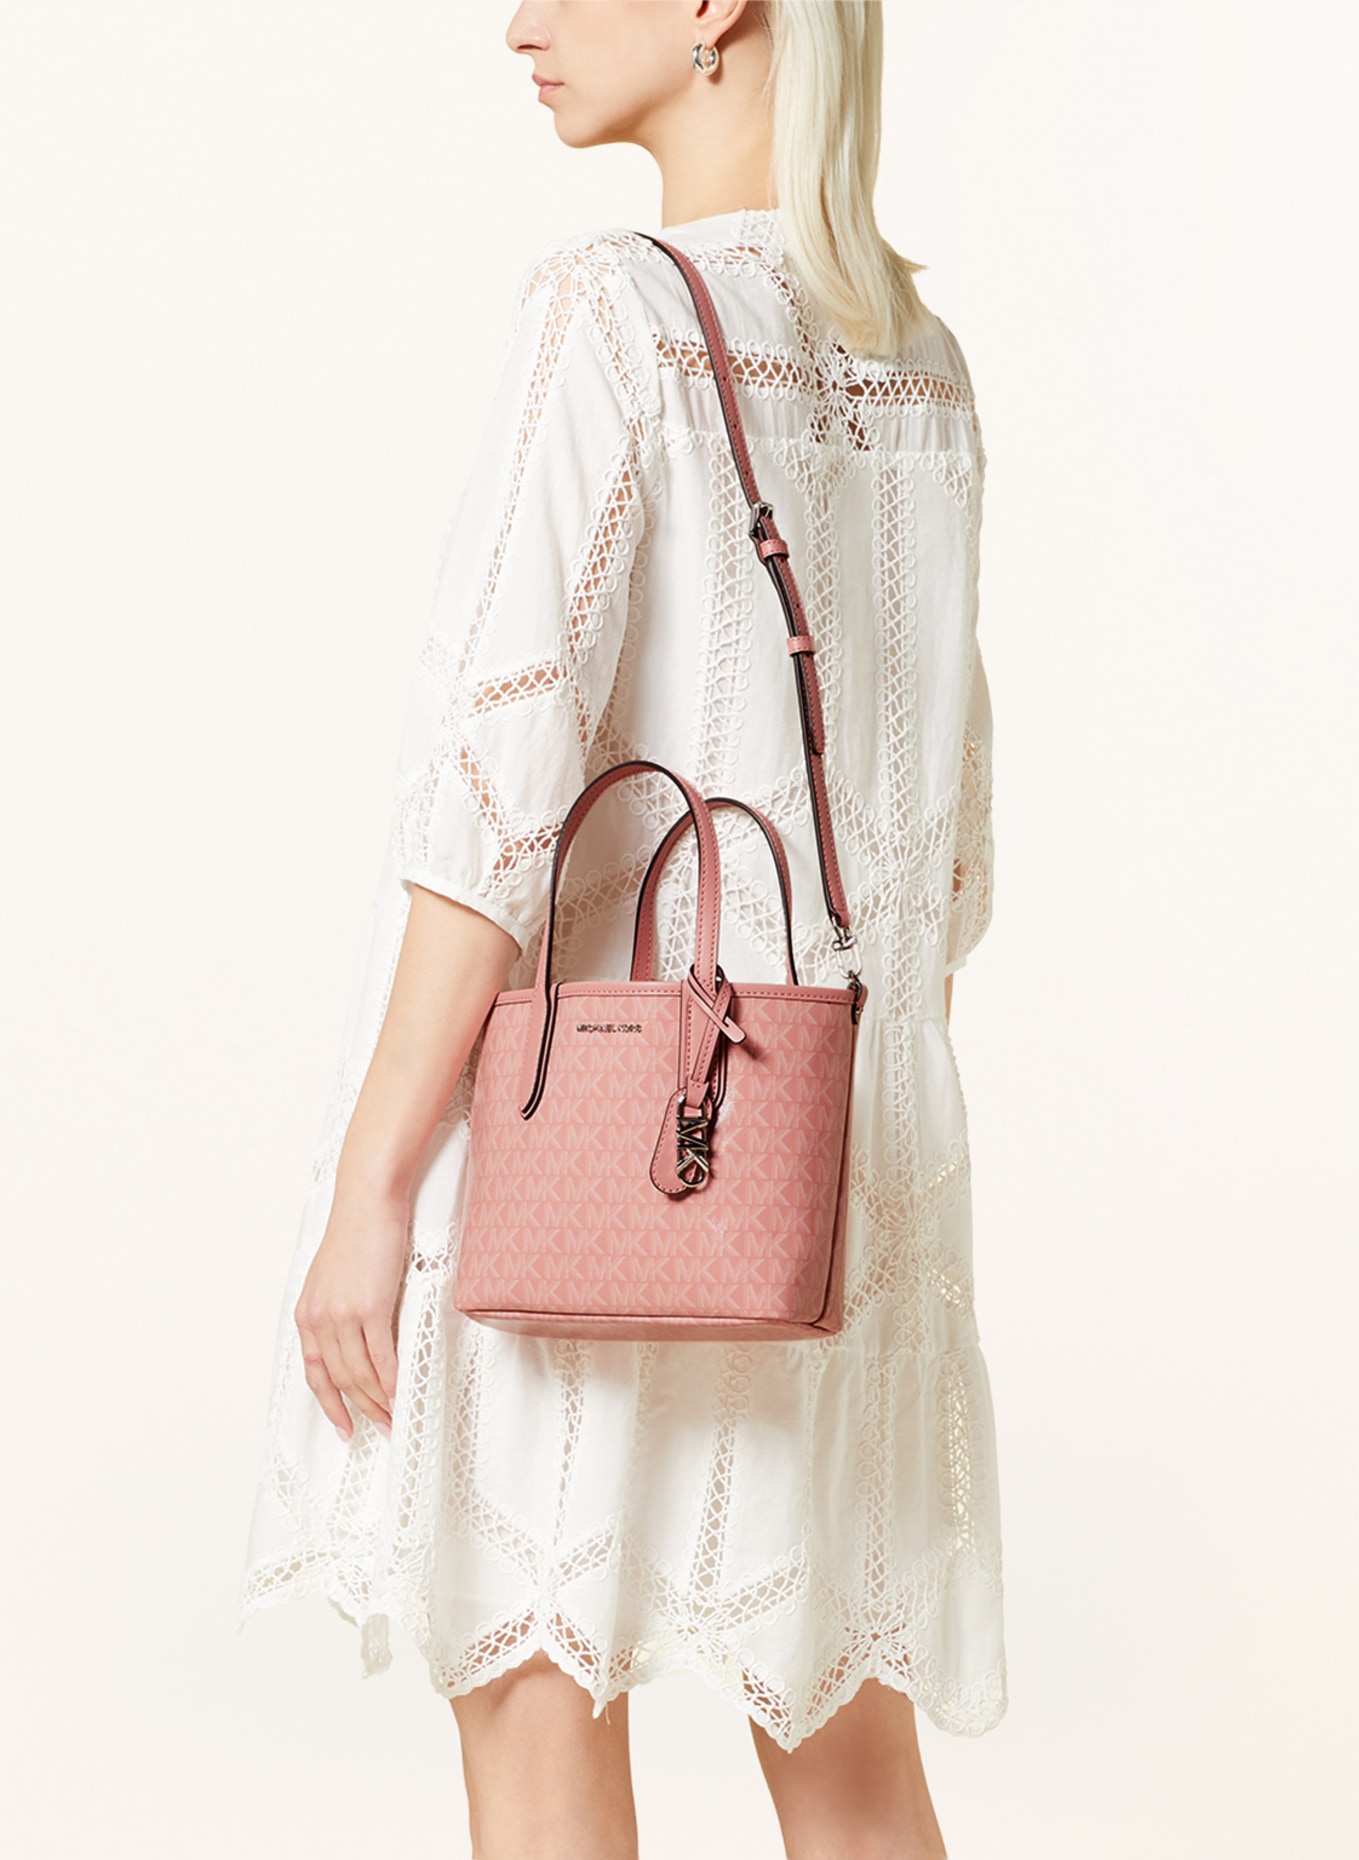 Michael Kors Gilly Large Drawstring Tote Handbag Light Powder Blush Pink MK  | eBay